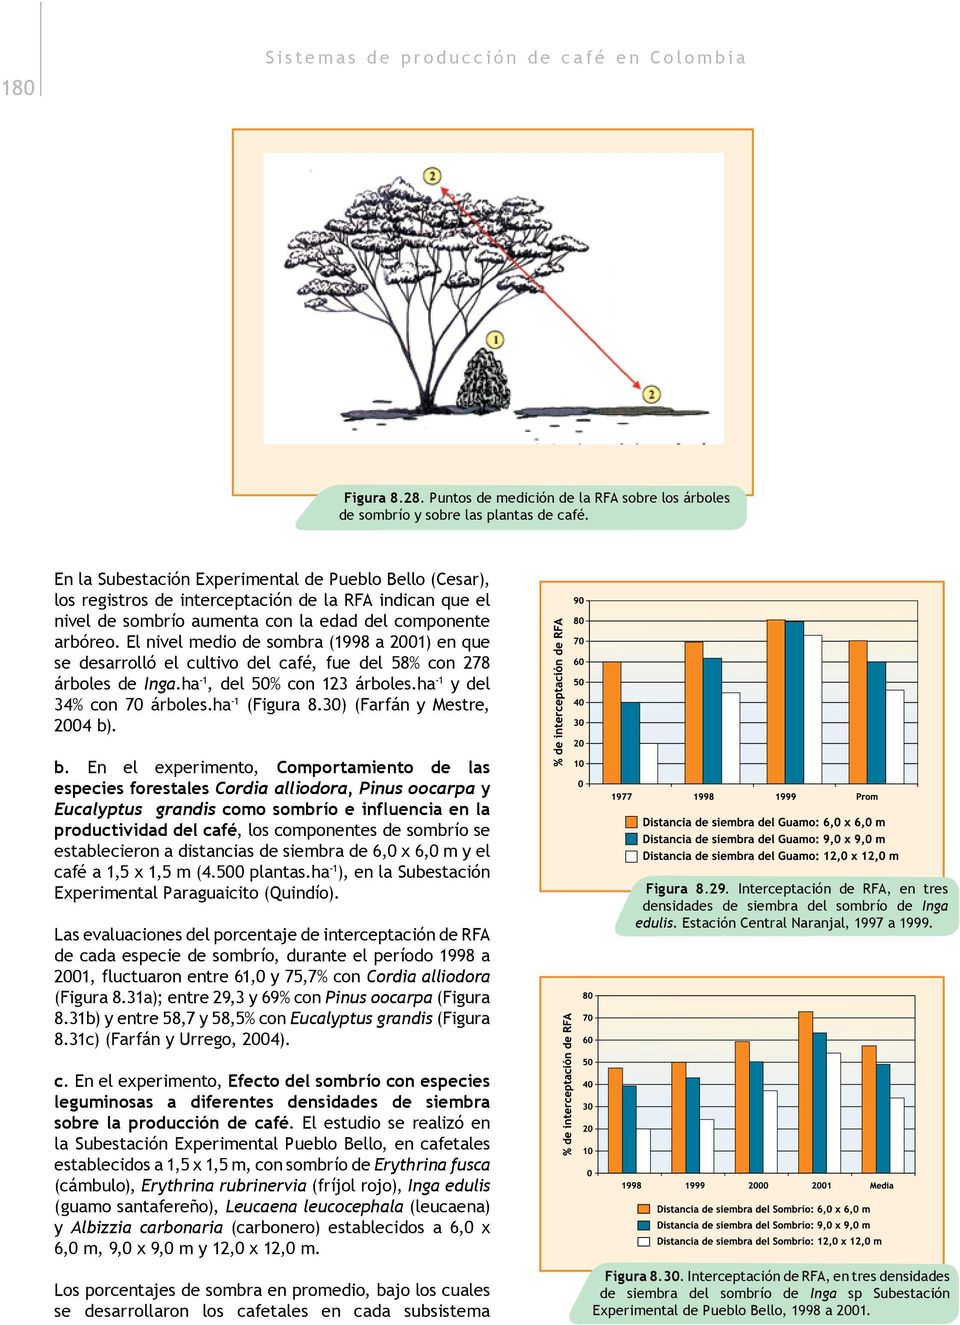 El nivel medio de sombra (1998 a 2001) en que se desarrolló el cultivo del café, fue del 58% con 278 árboles de Inga.ha -1, del 50% con 123 árboles.ha -1 y del 34% con 70 árboles.ha -1 (Figura 8.